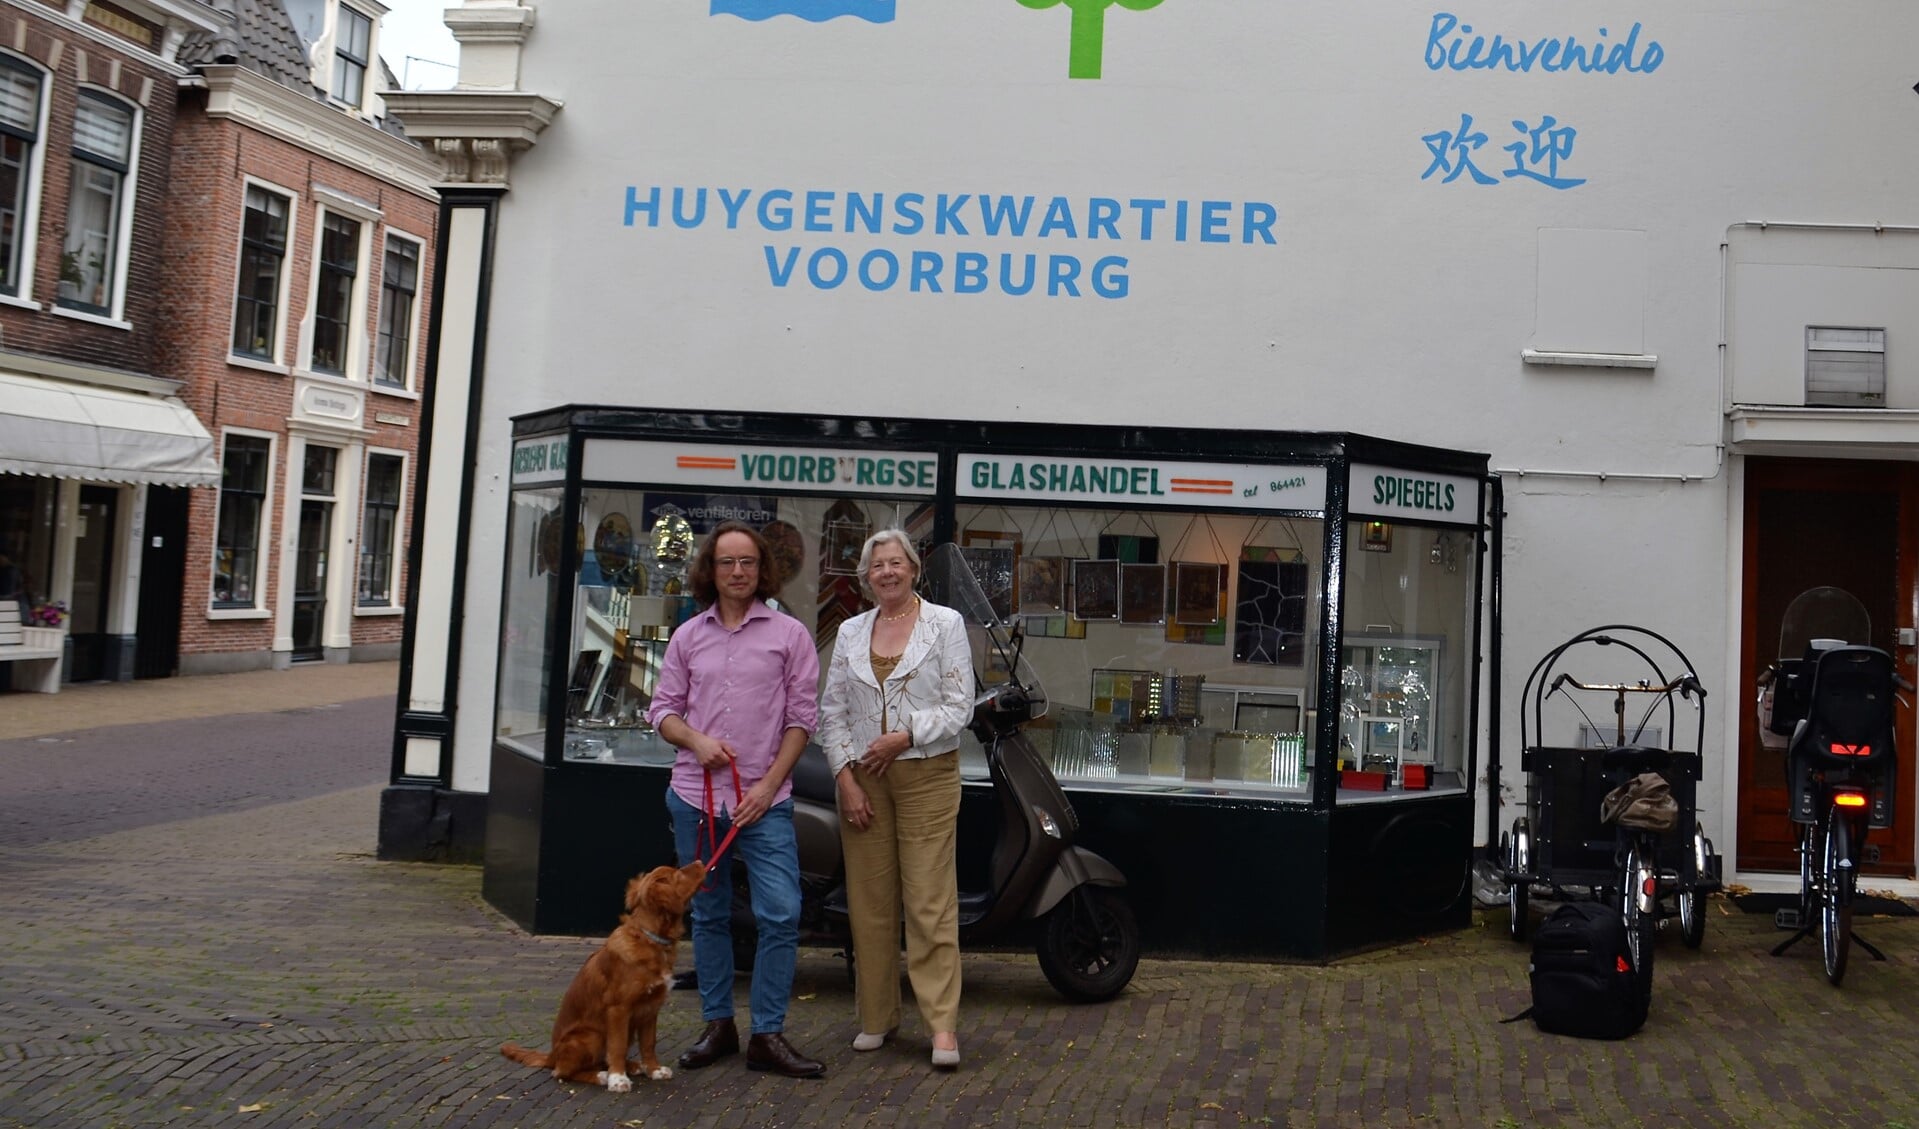 Hans de Raad en Tilly Zwartepoorte organiseren het Huygensfestival in het Huygenskwartier (tekst/foto: Inge Koot).